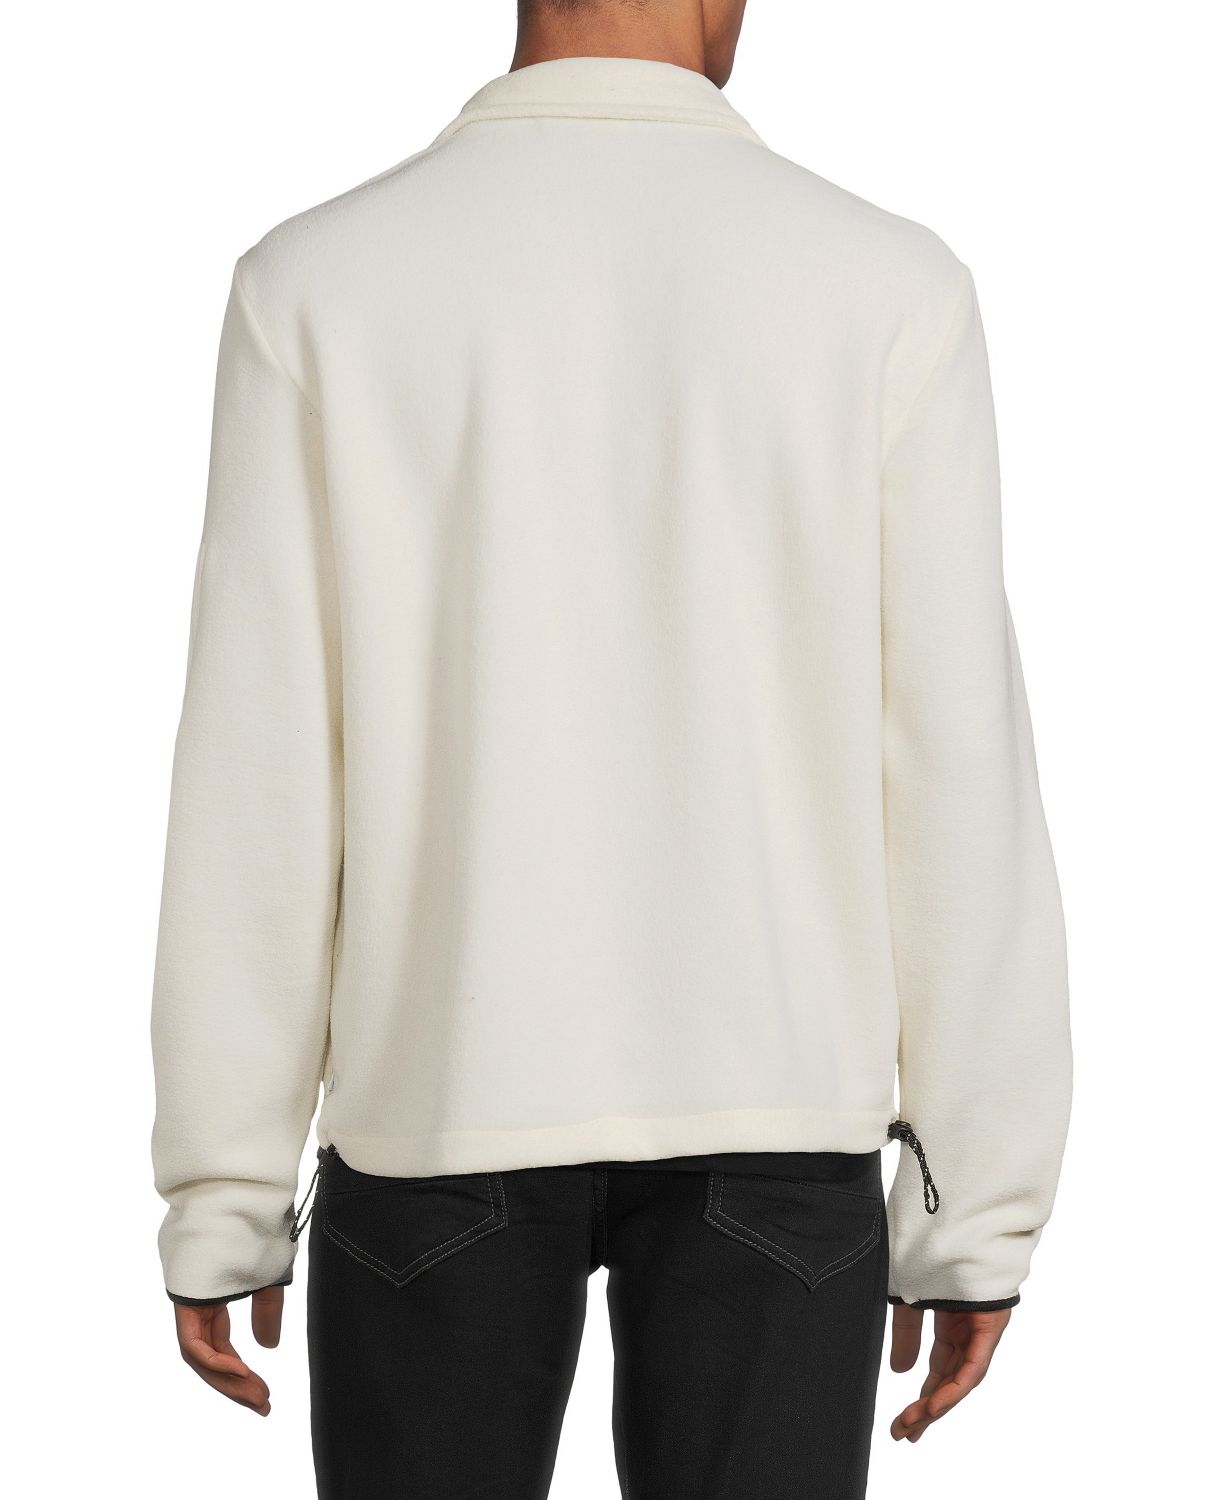 Флисовый свитер Polar с воротником-стойкой и молнией до половины Onia